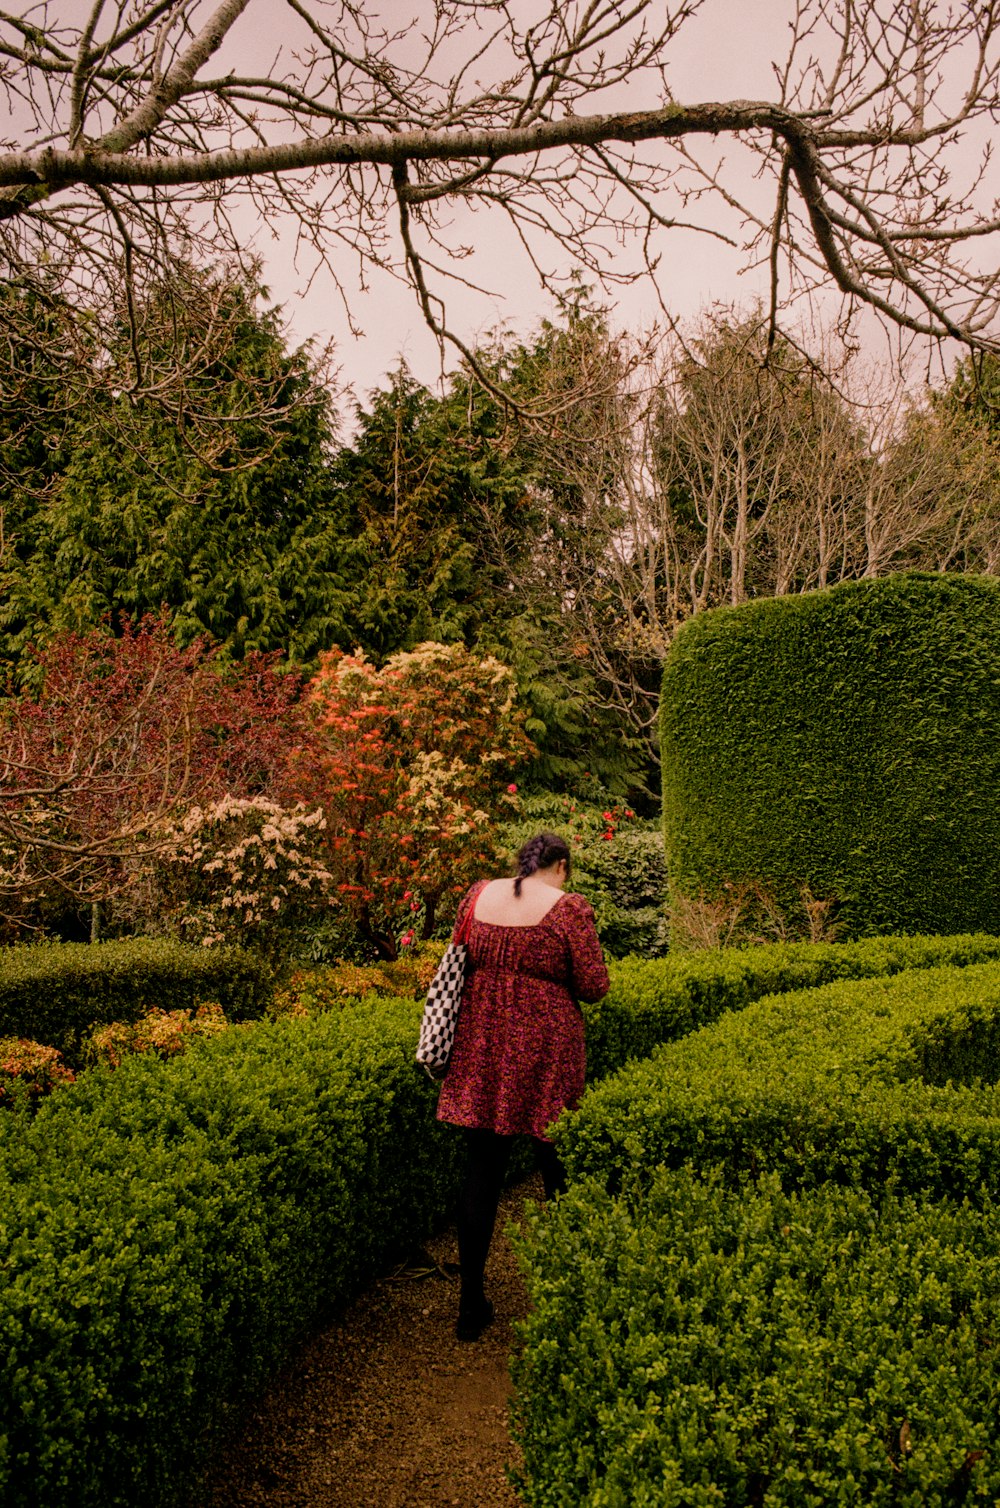 a woman in a red dress walking through a garden